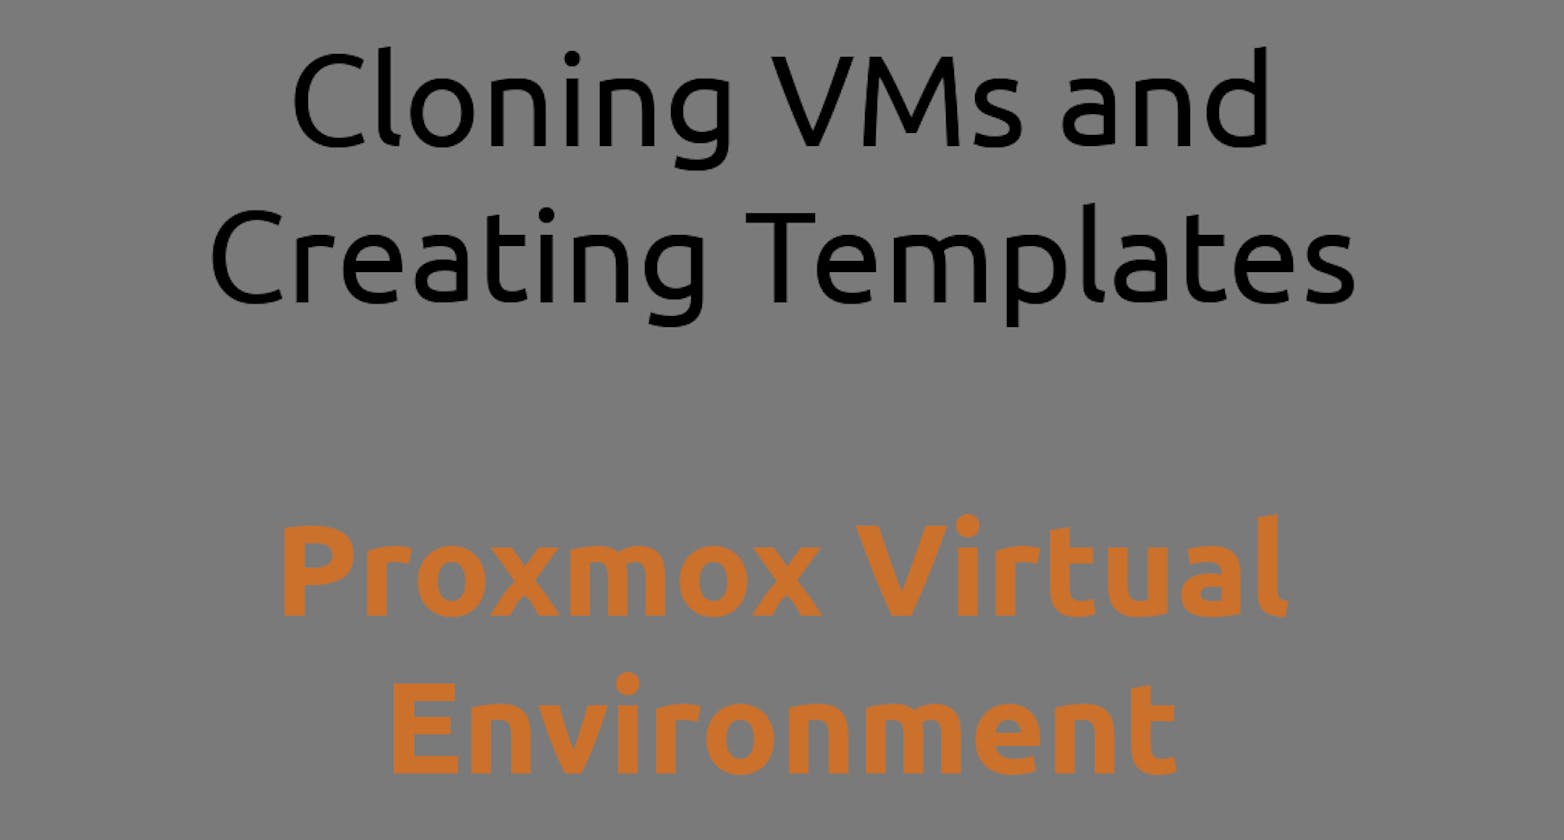 Proxmox Virtual Environment Cloning VMs and Creating Templates-Part 05